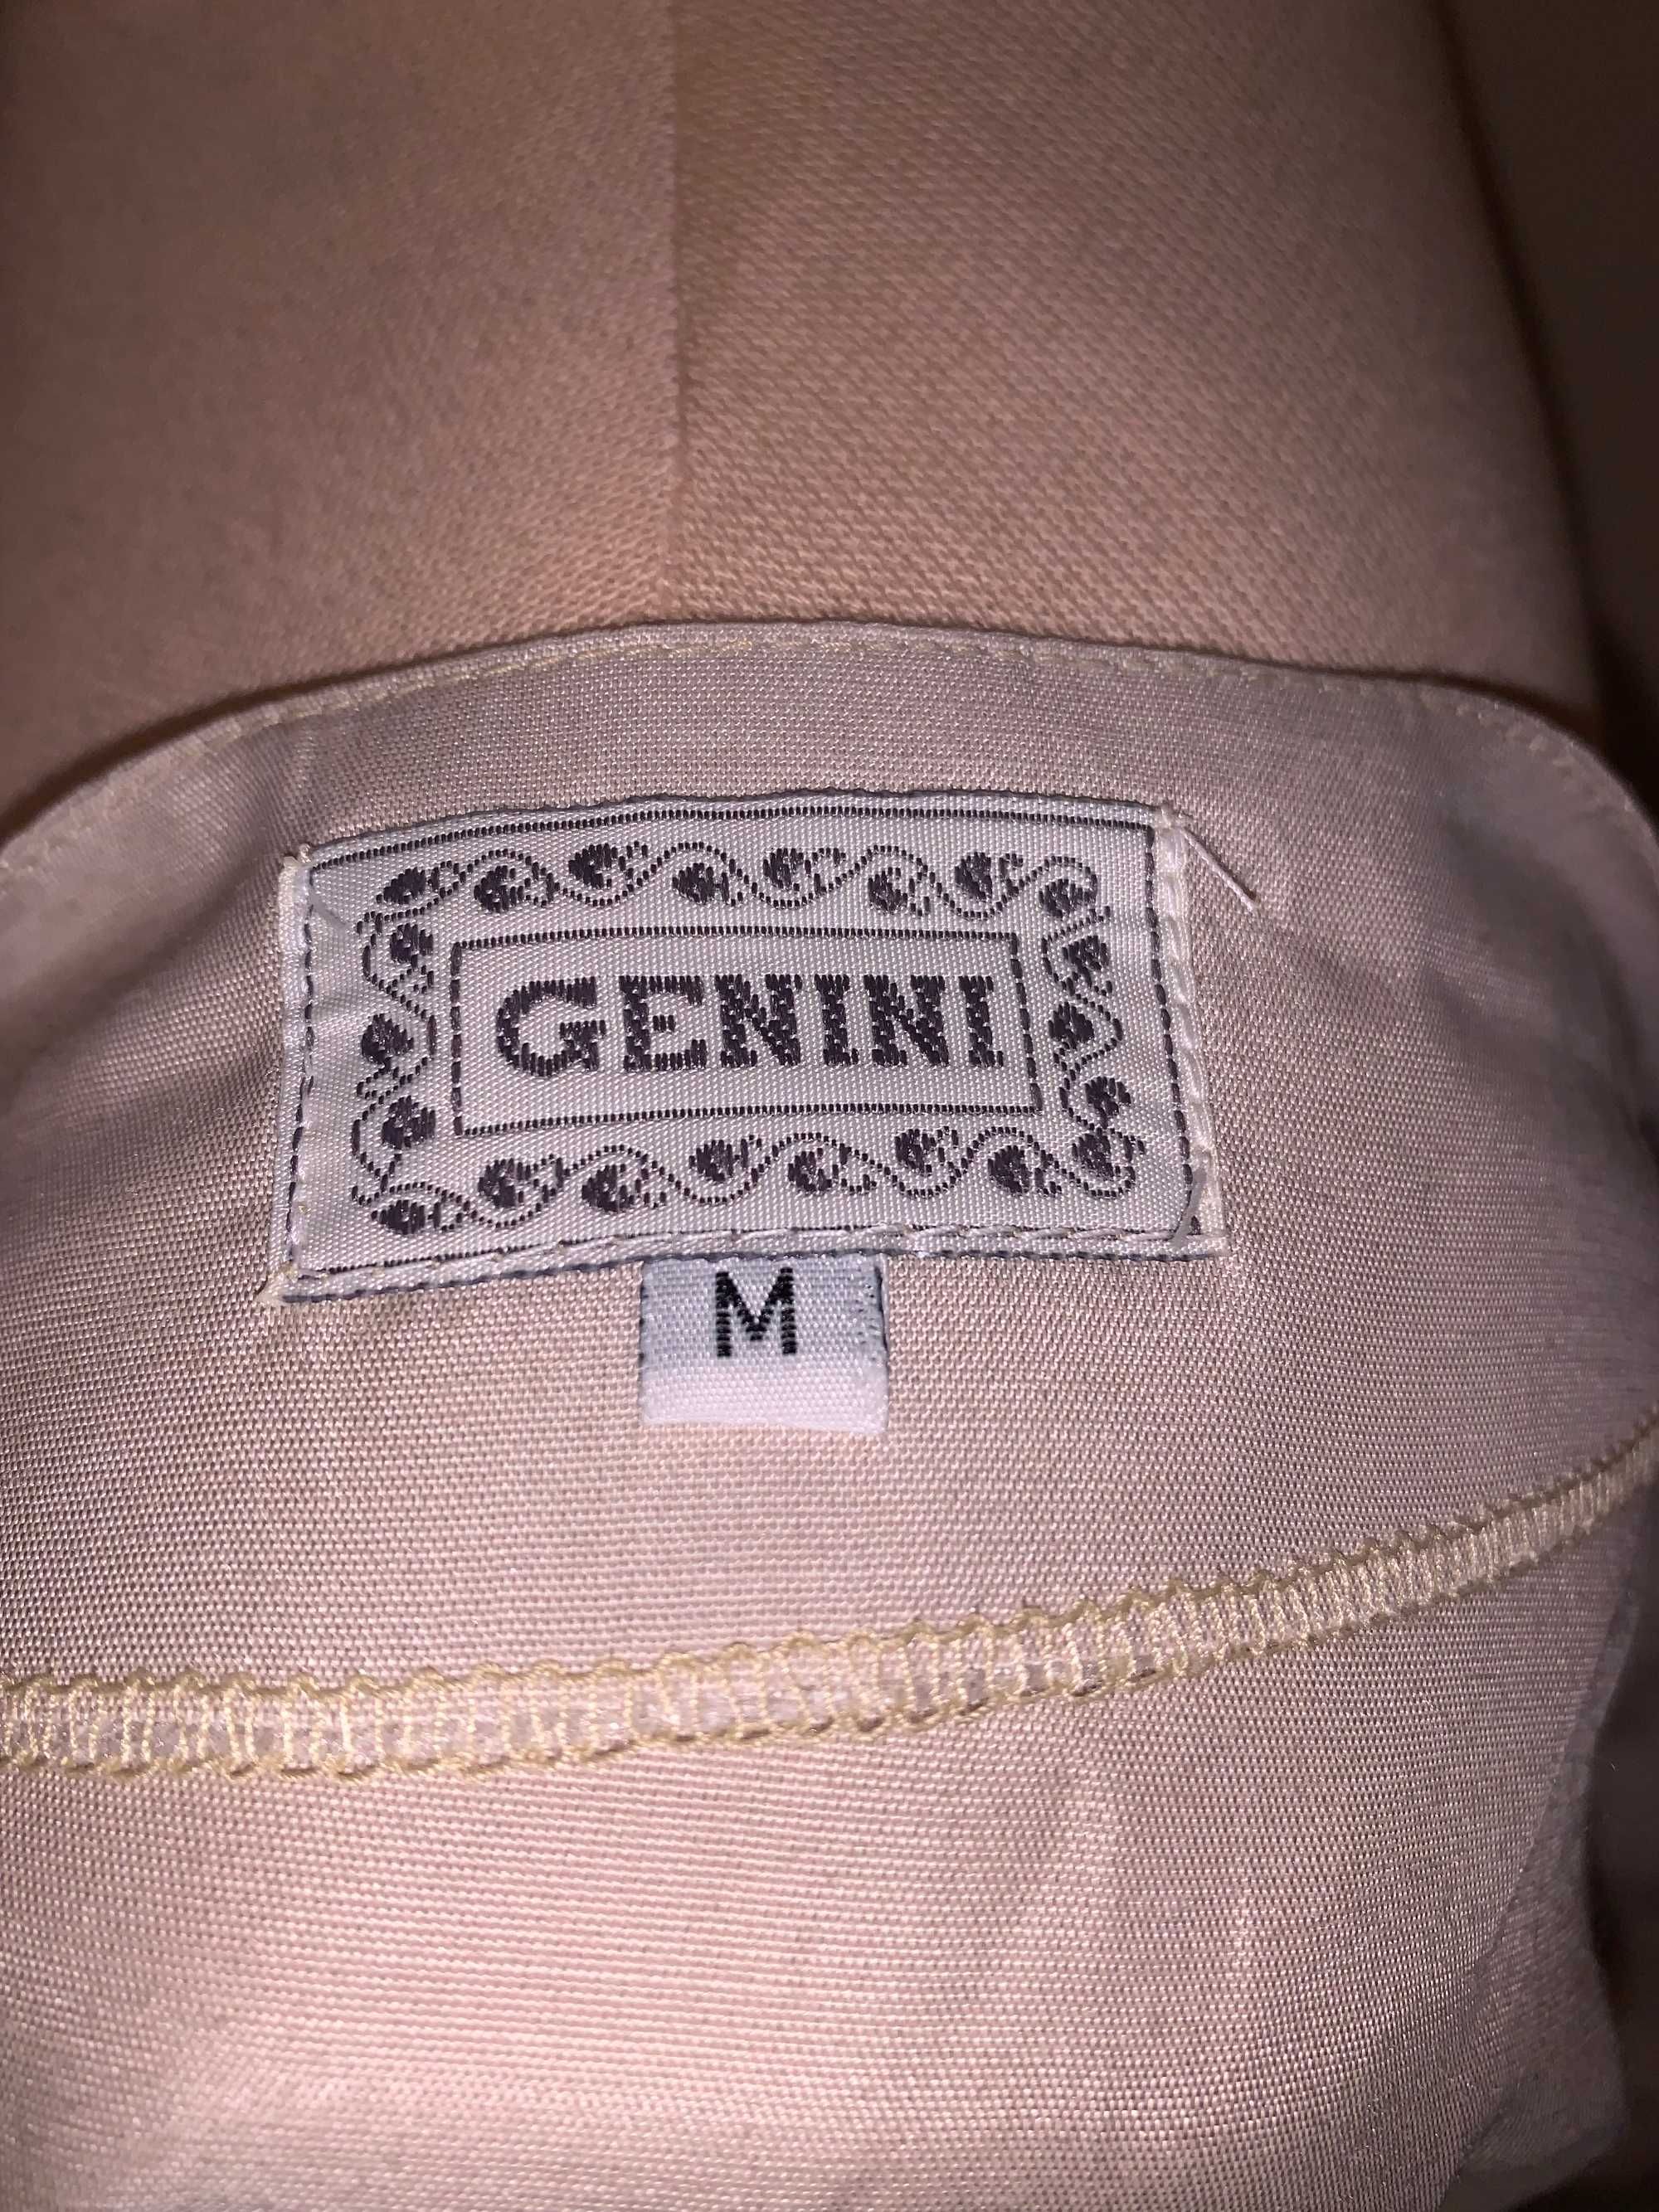 Ozdobna beżowa bluzka, Genini, rozm M